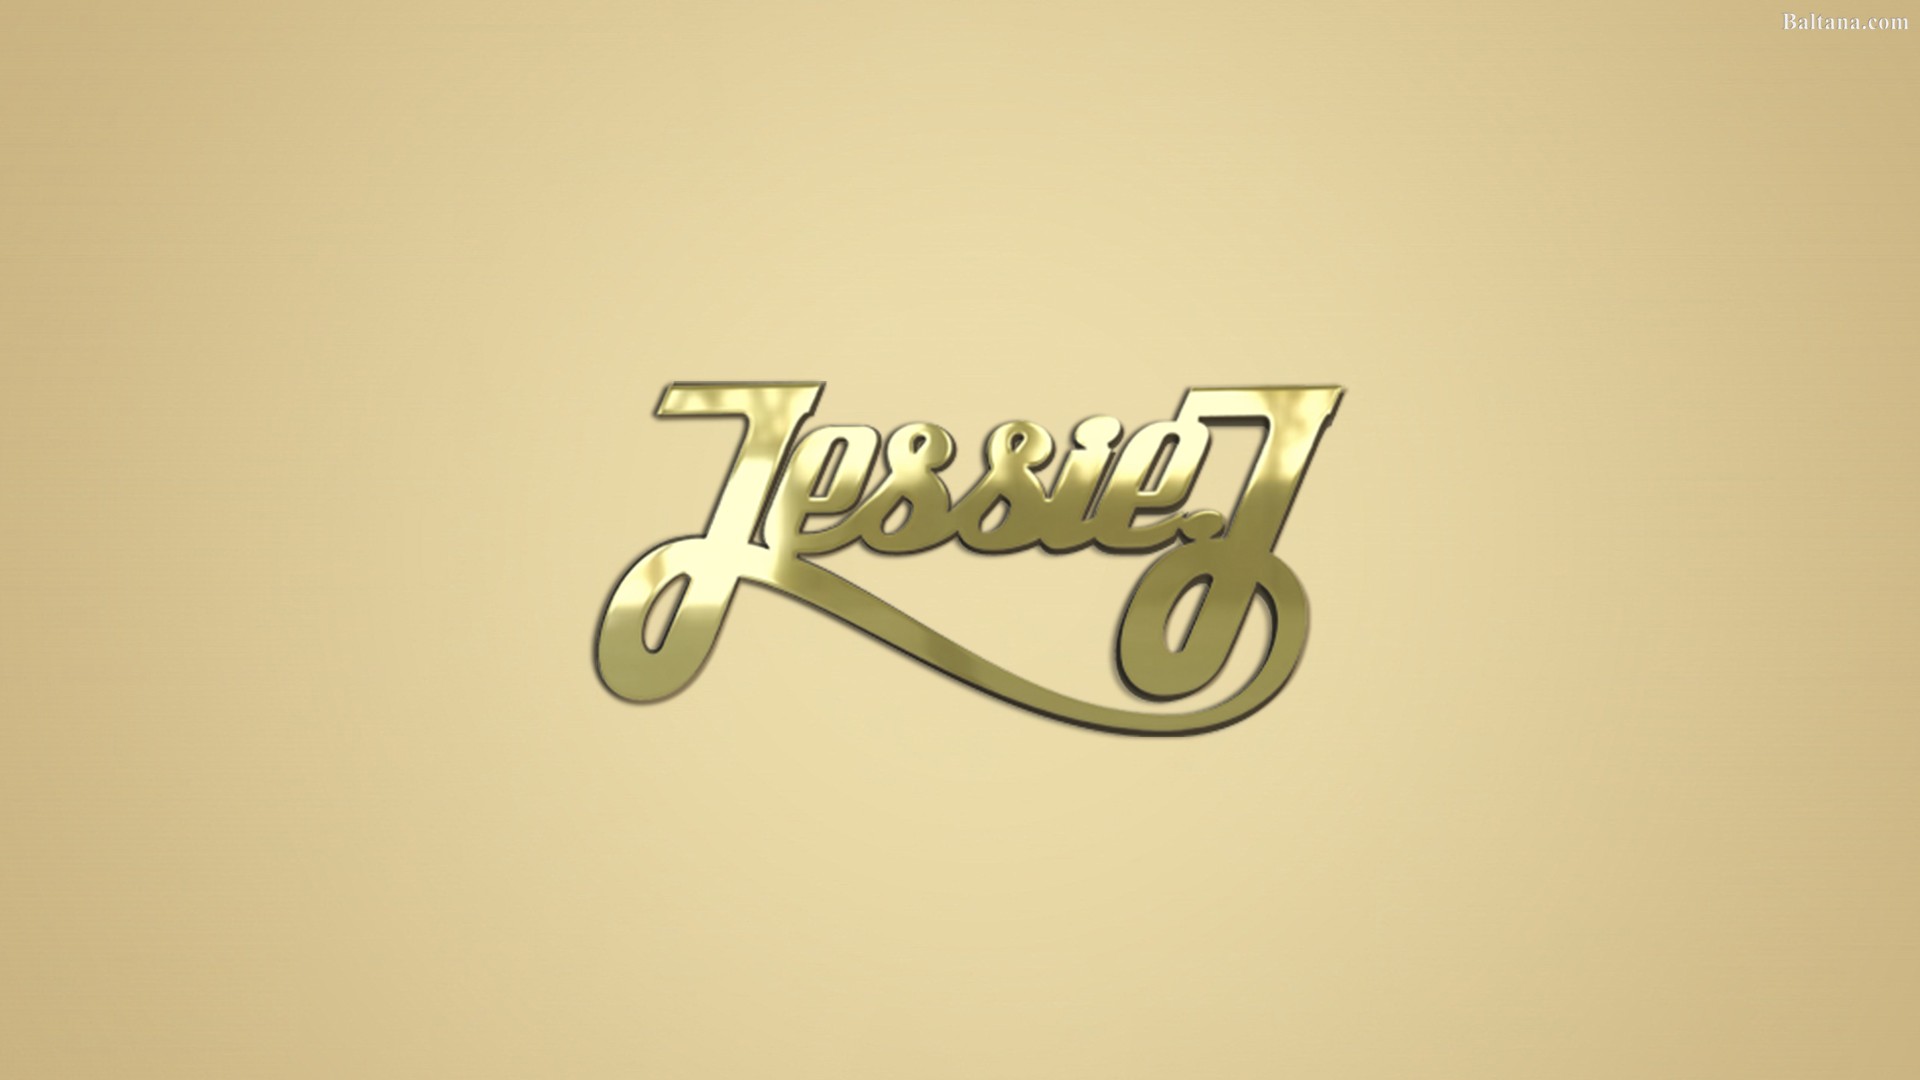 Jessie J High Definition Wallpaper 